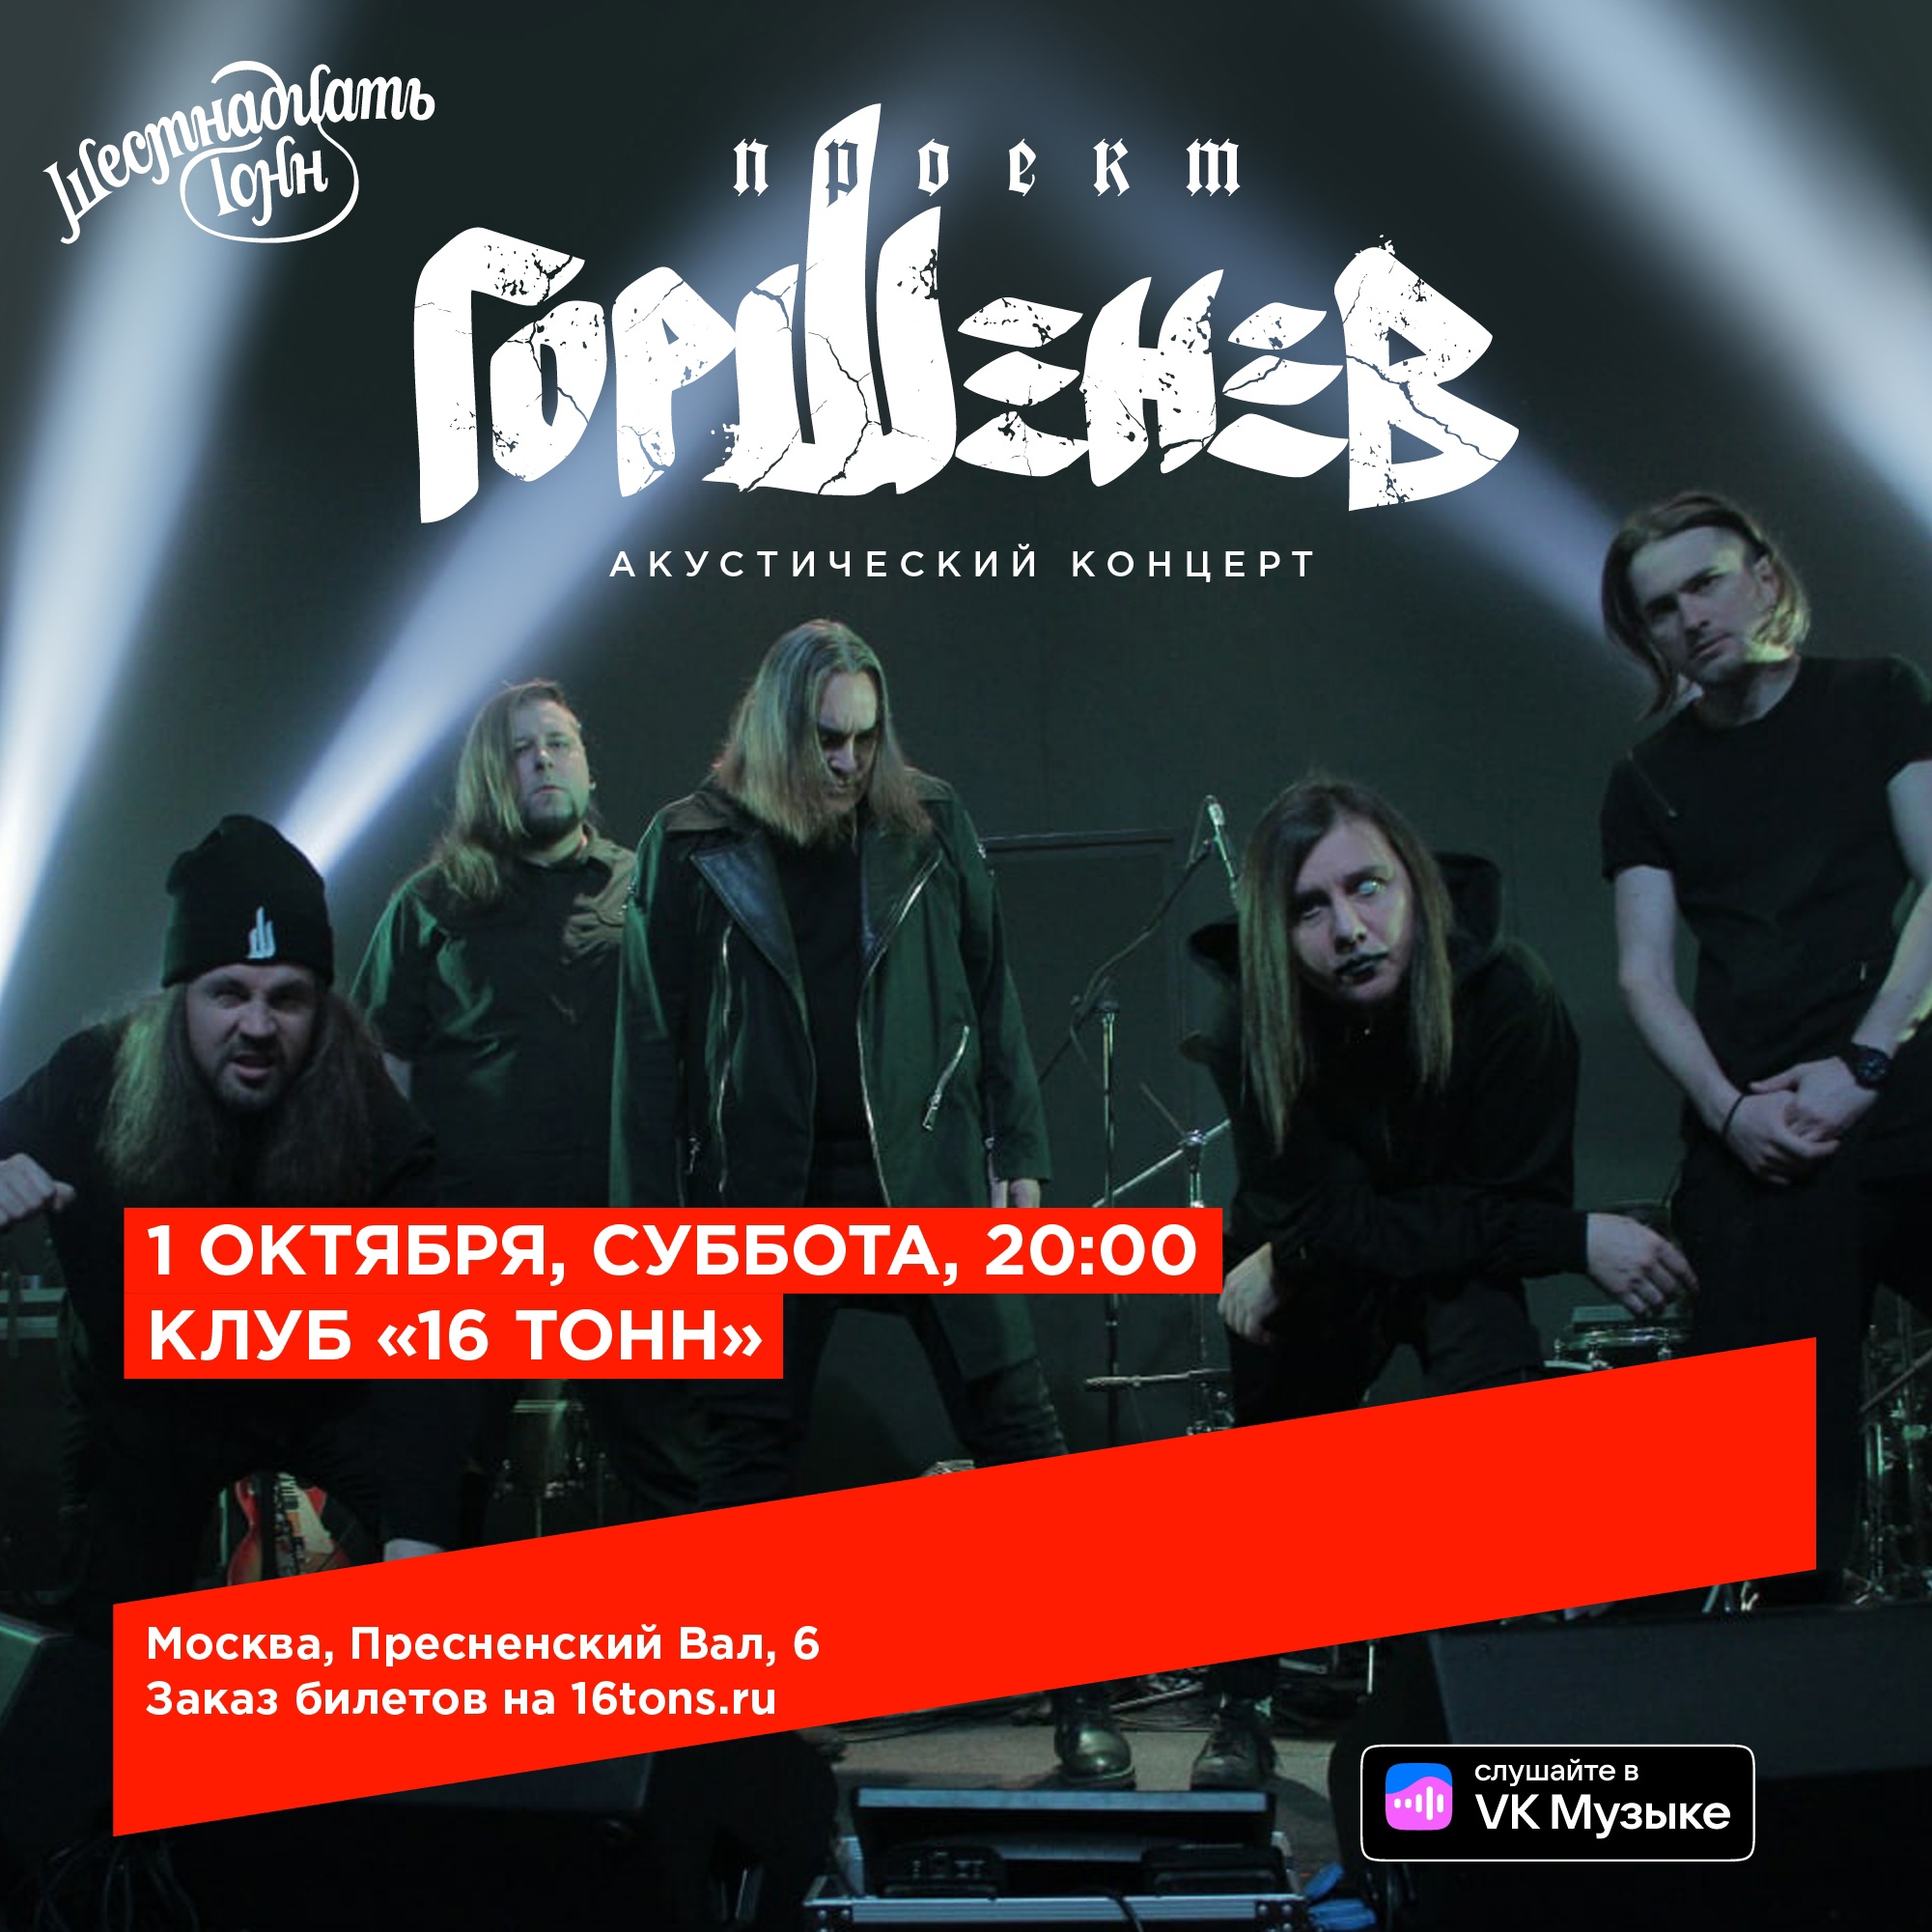 Проект ГОРШЕНЕВ отметил предстоящий День рождения Сергея Есенина акустическим концертом